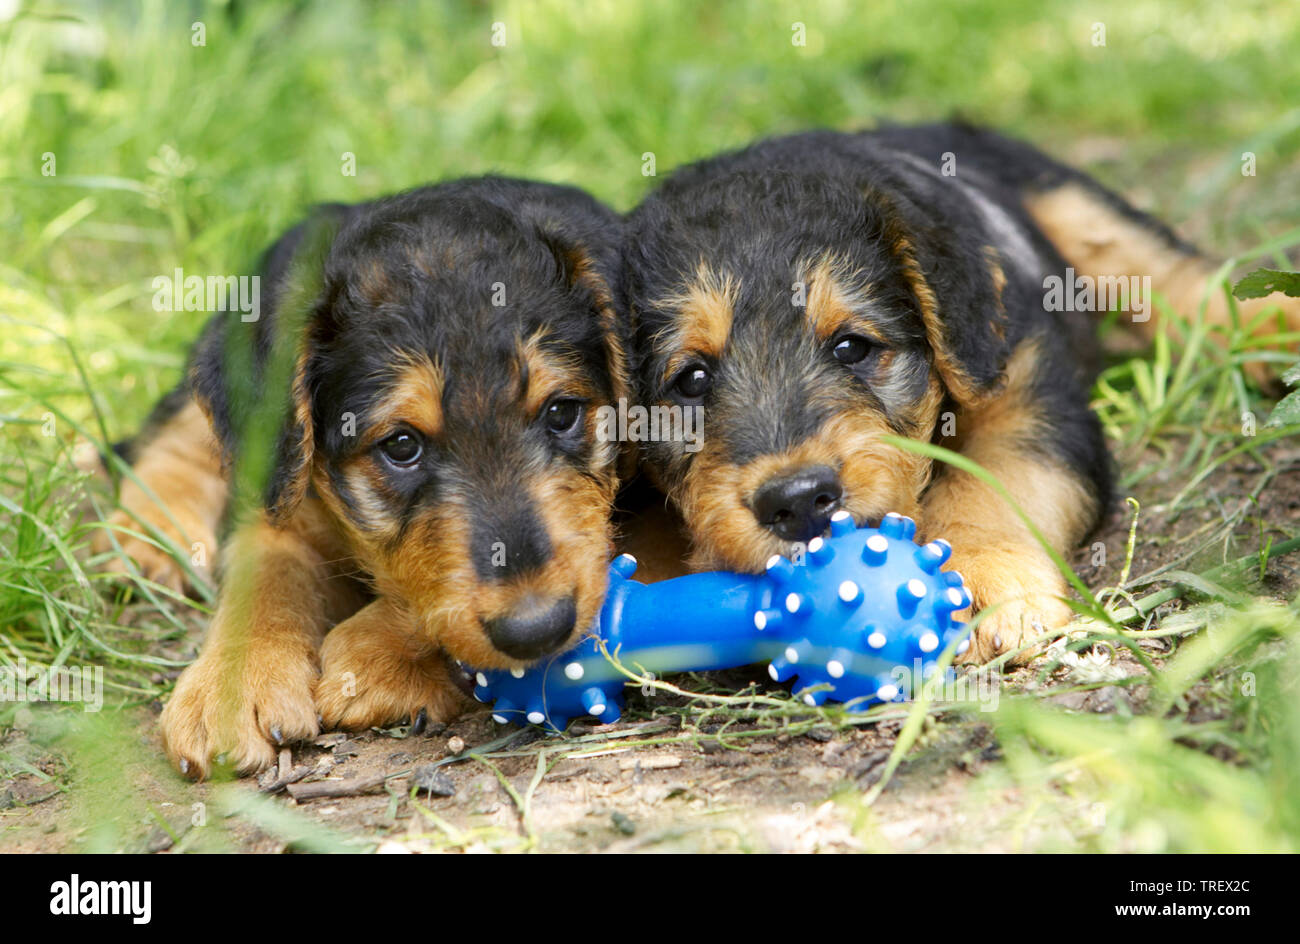 Airedale Terrier. Deux chiots avec os jouet bleu, couché dans l'herbe. Allemagne Banque D'Images